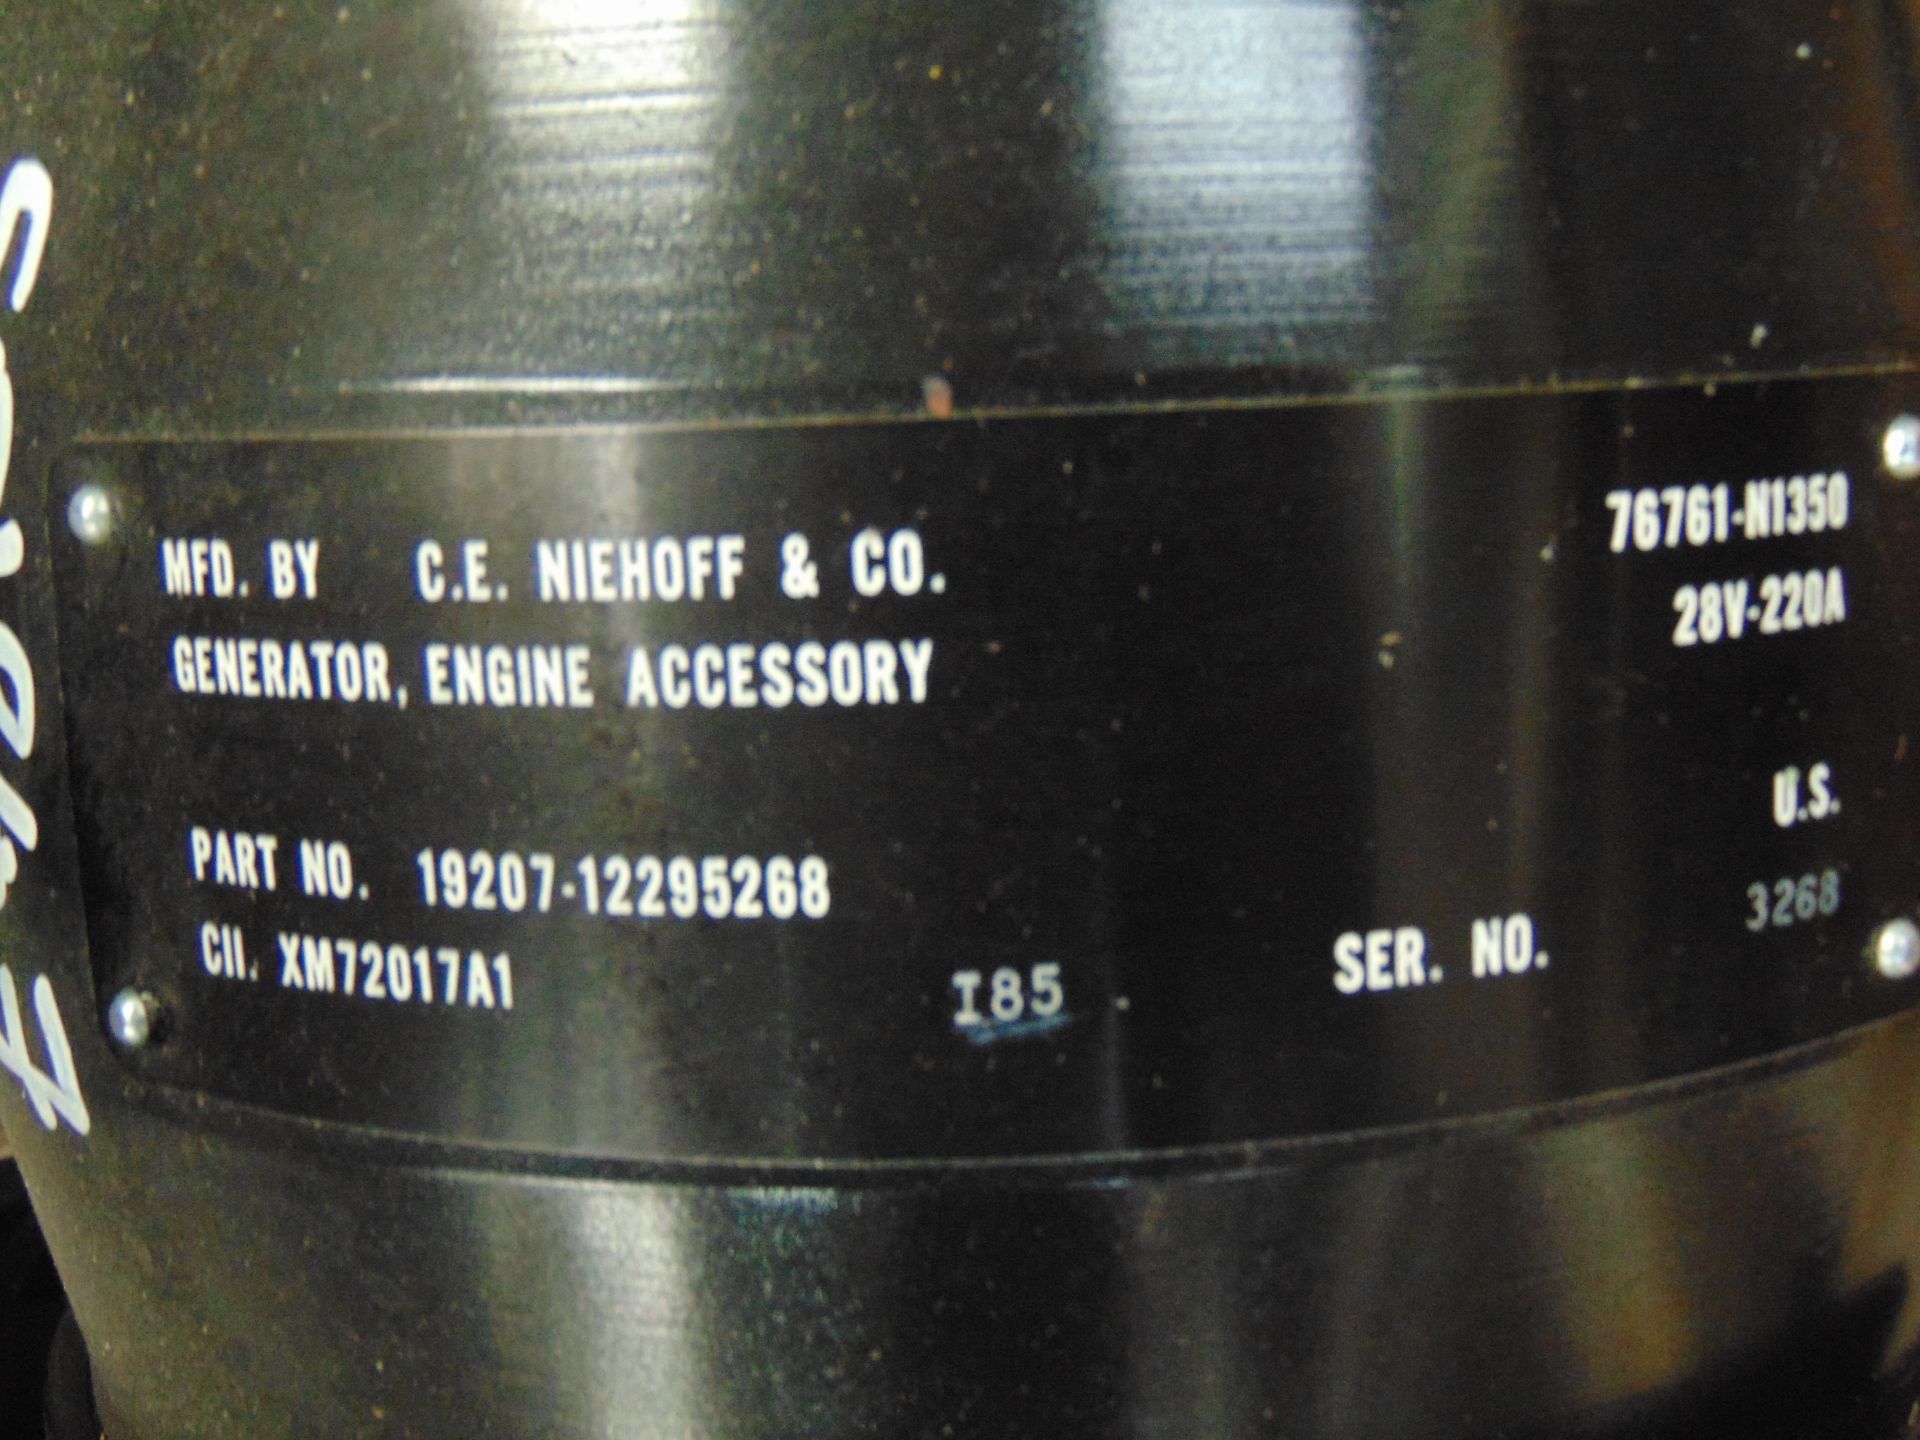 C.E Niehoff & Co 28V 220A Alternator - Image 8 of 9